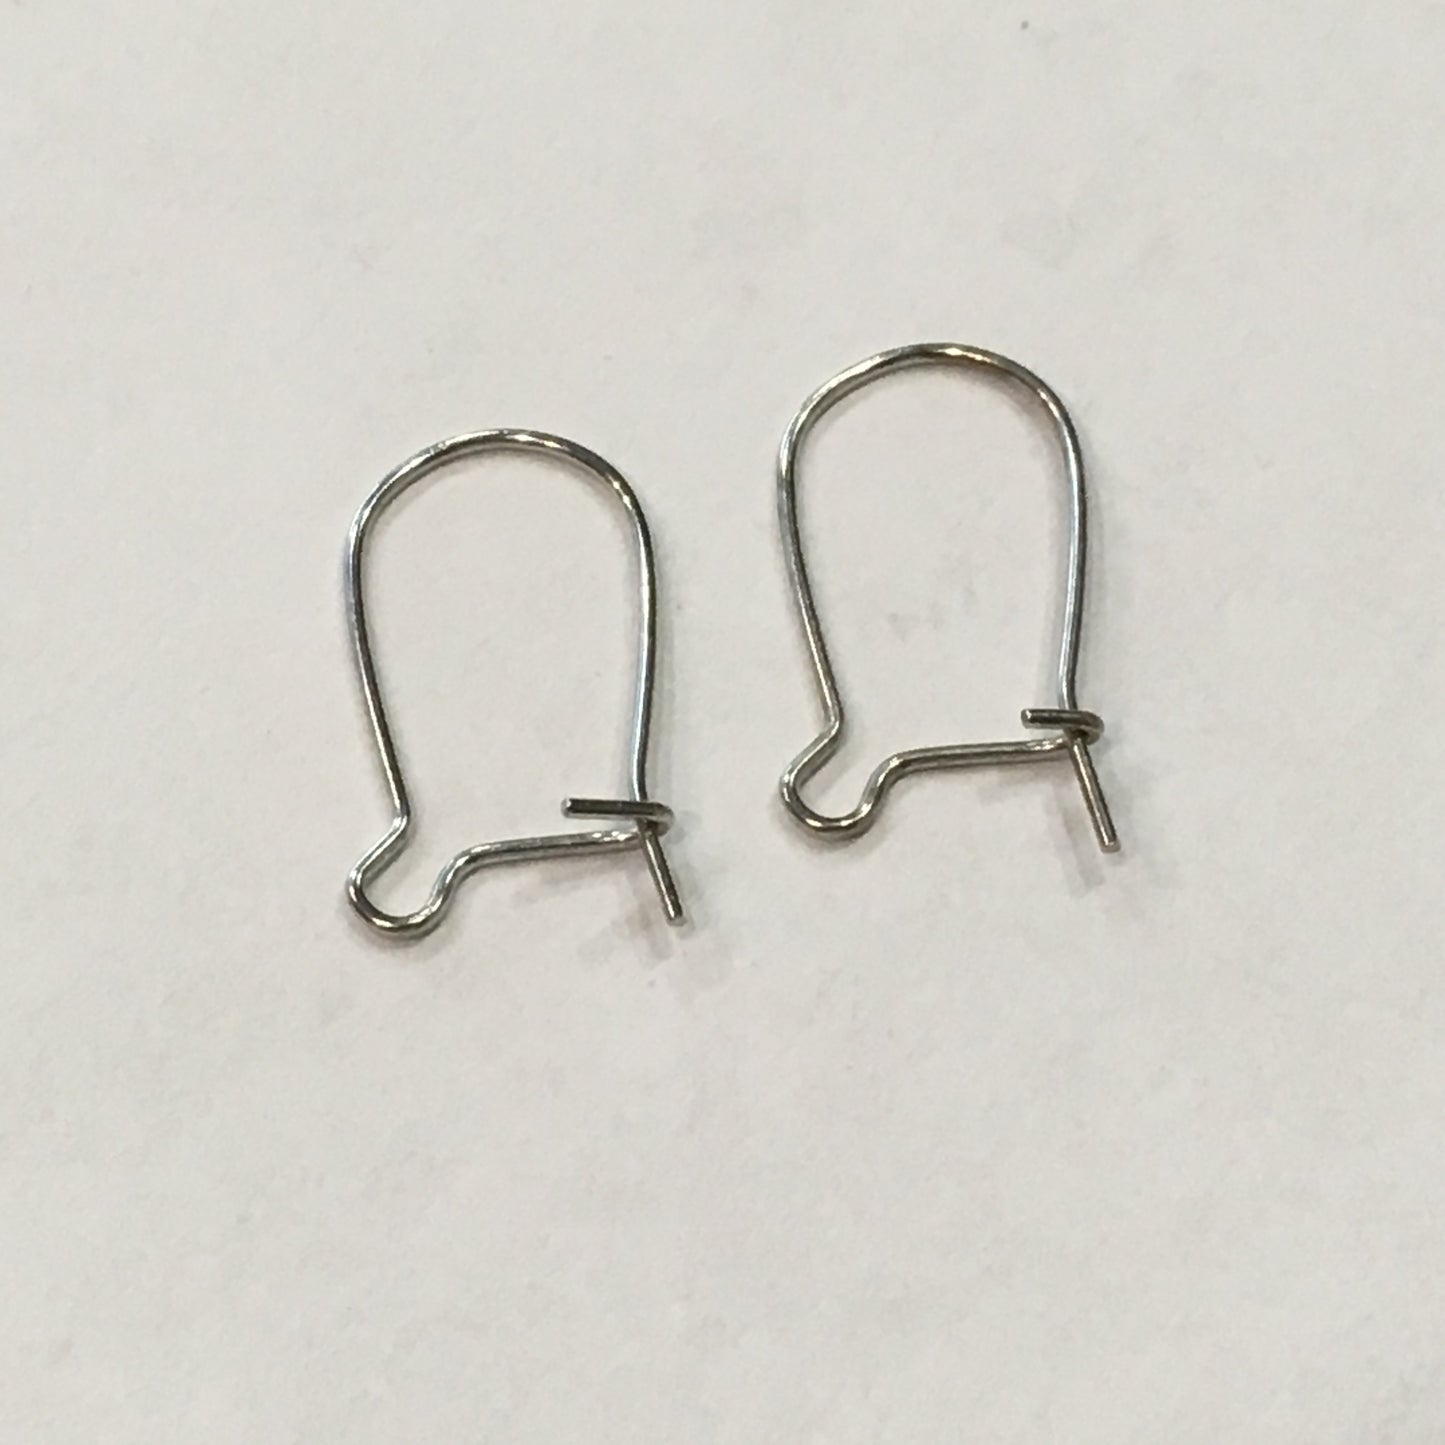 23-Gauge 16 mm Stainless Steel Hypoallergenic Kidney Ear Wires - 1 Pair